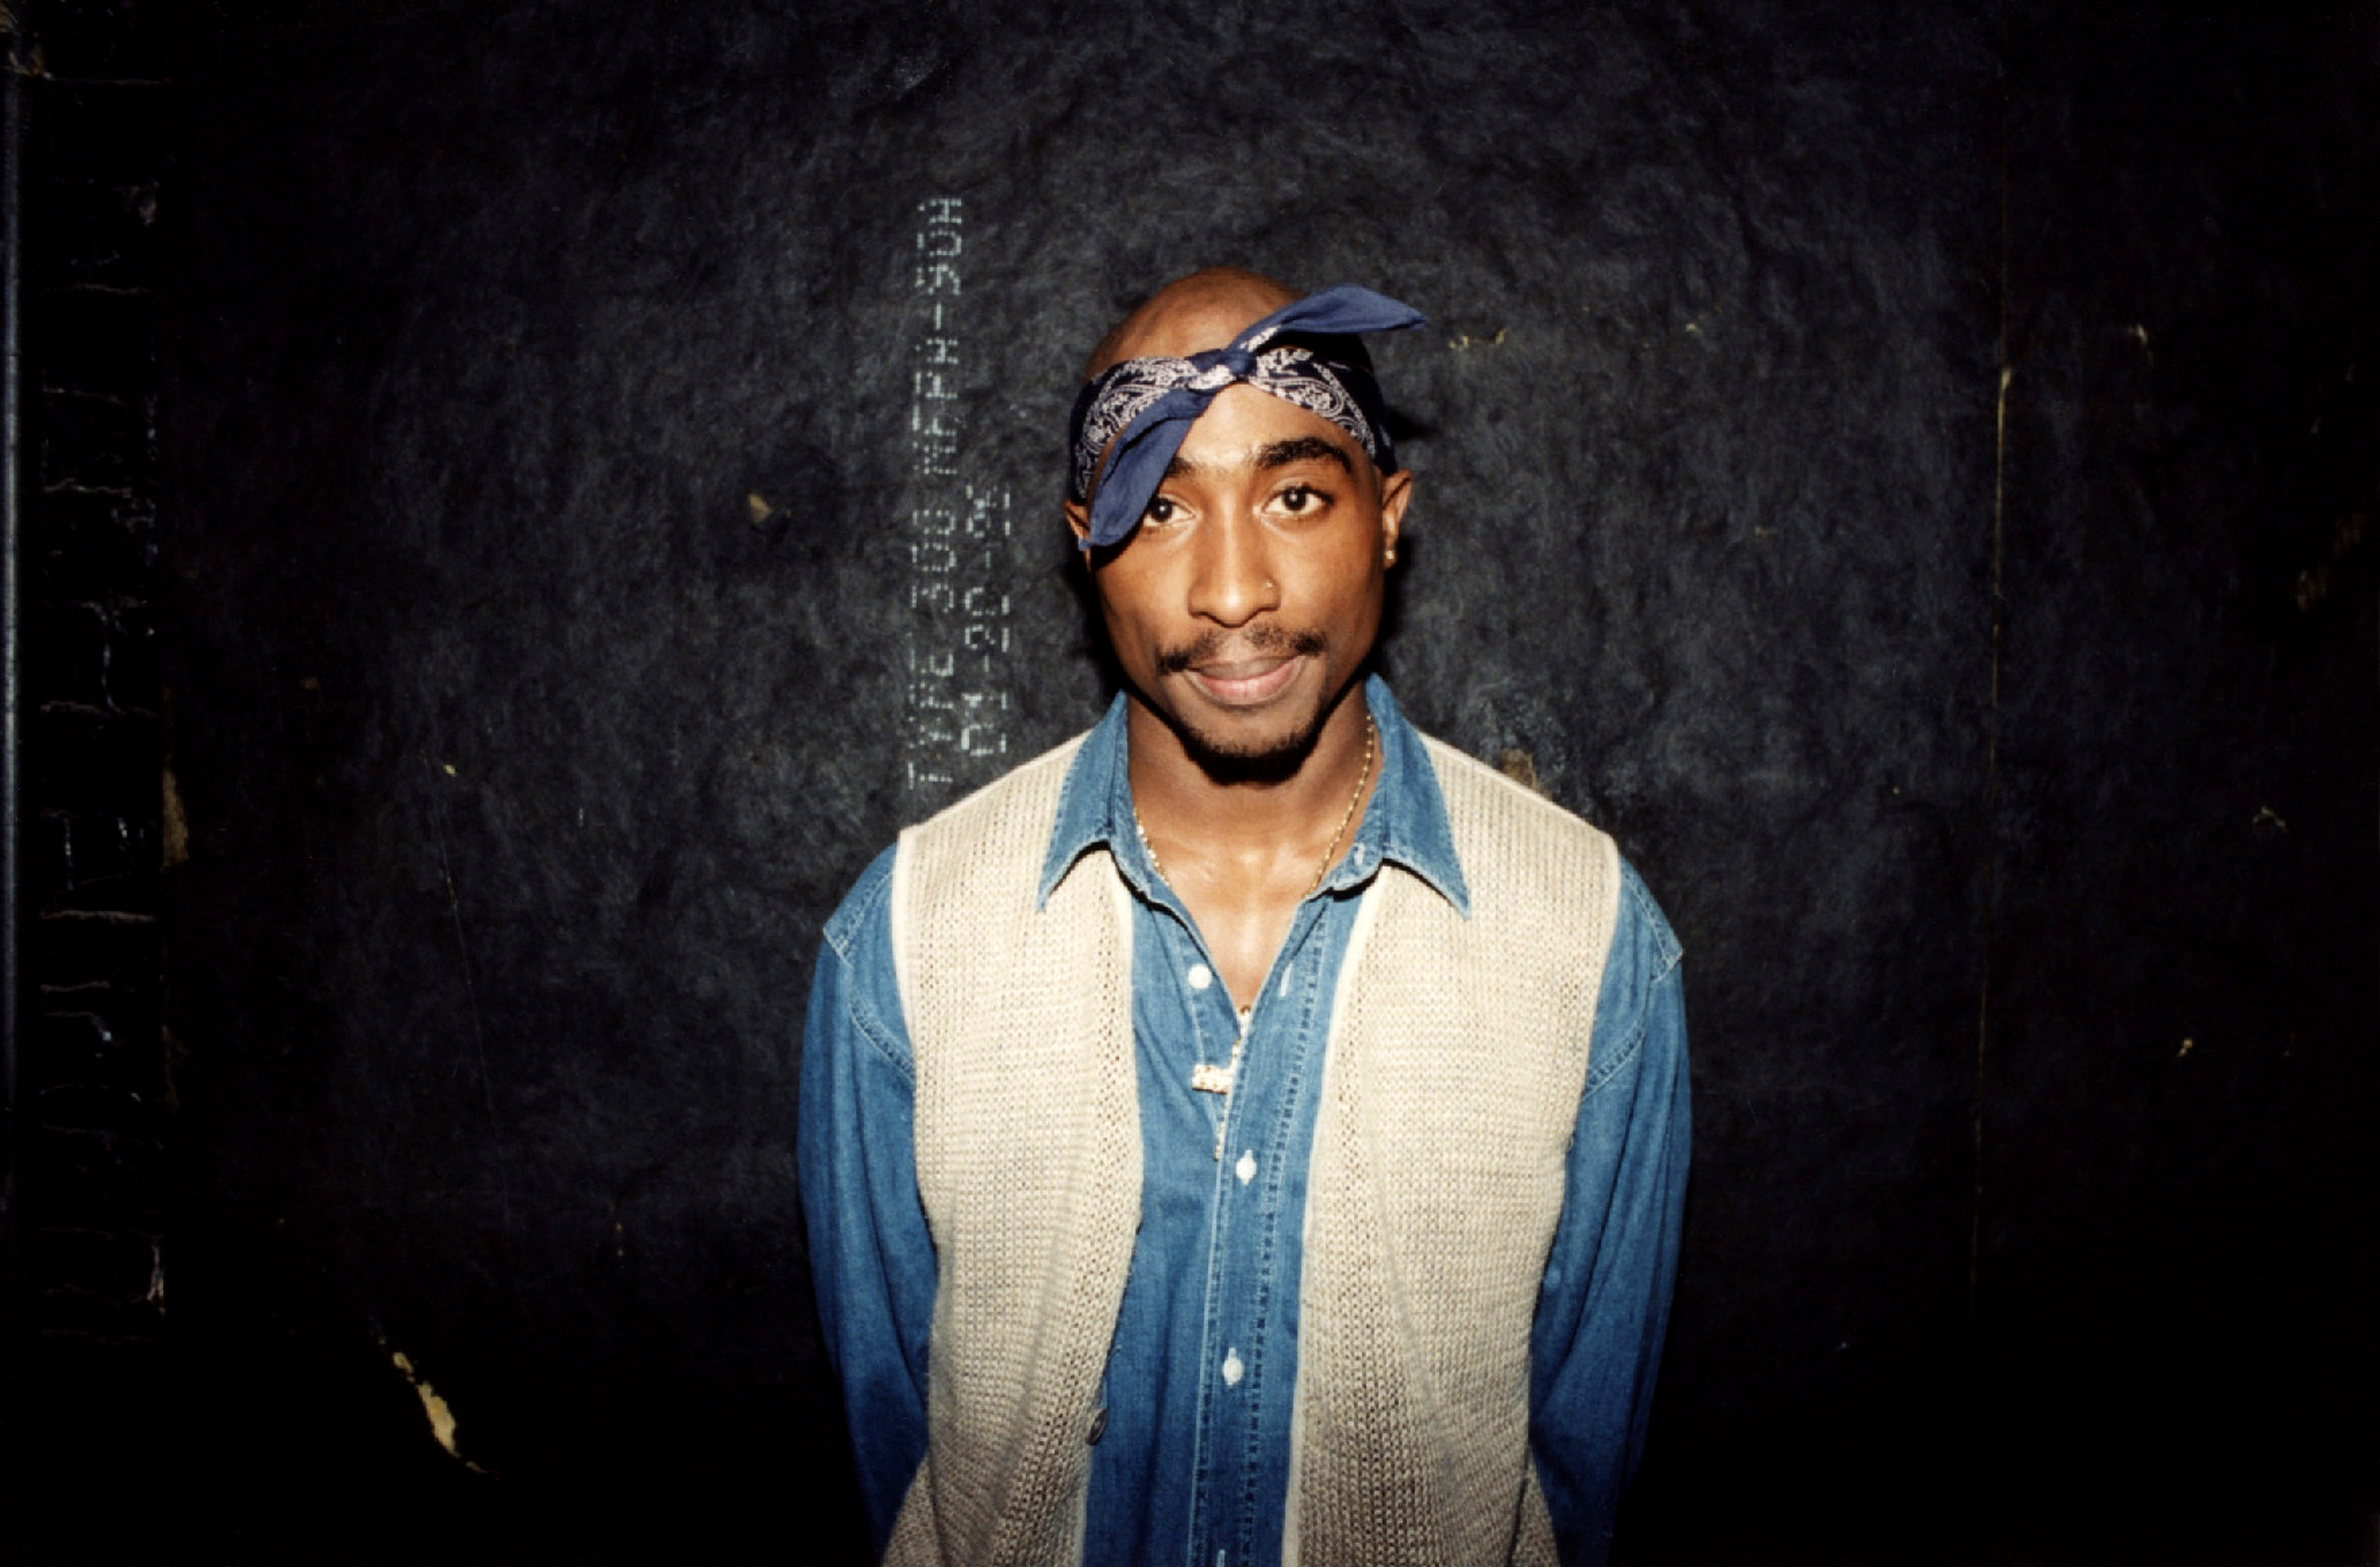 Συνελήφθη ύποπτος για τη δολοφονία του Tupac το 1996 – Όλα δείχνουν ότι βρέθηκε ο ένοχος 27 χρόνια μετά